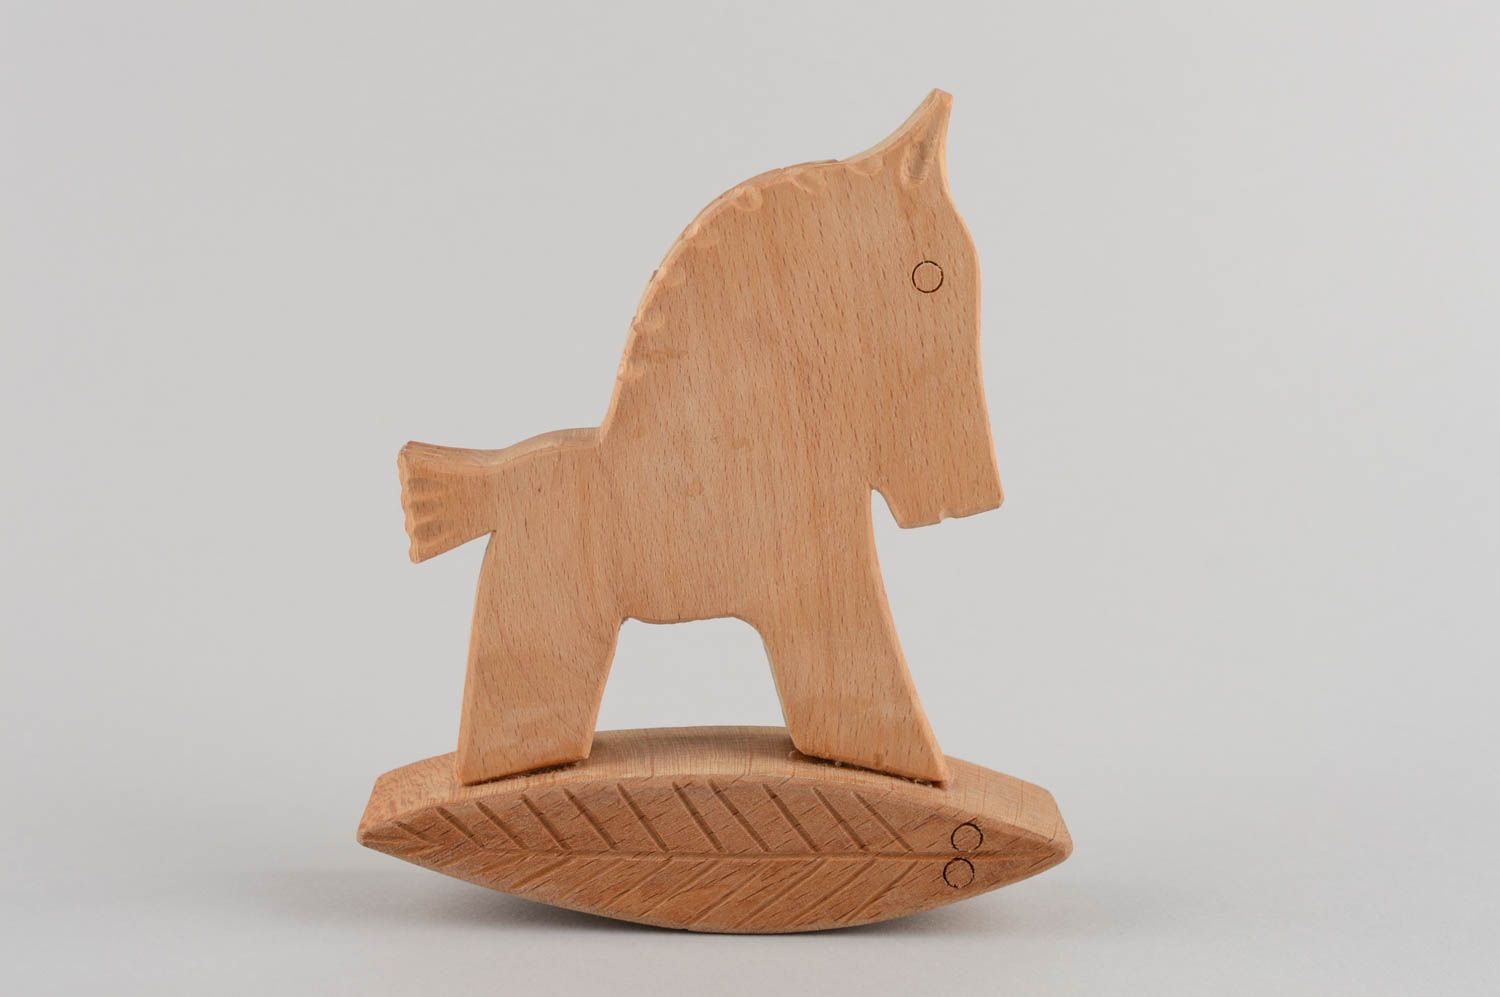 Wooden rocking horse toy for children handmade nursery decor ideas photo 3